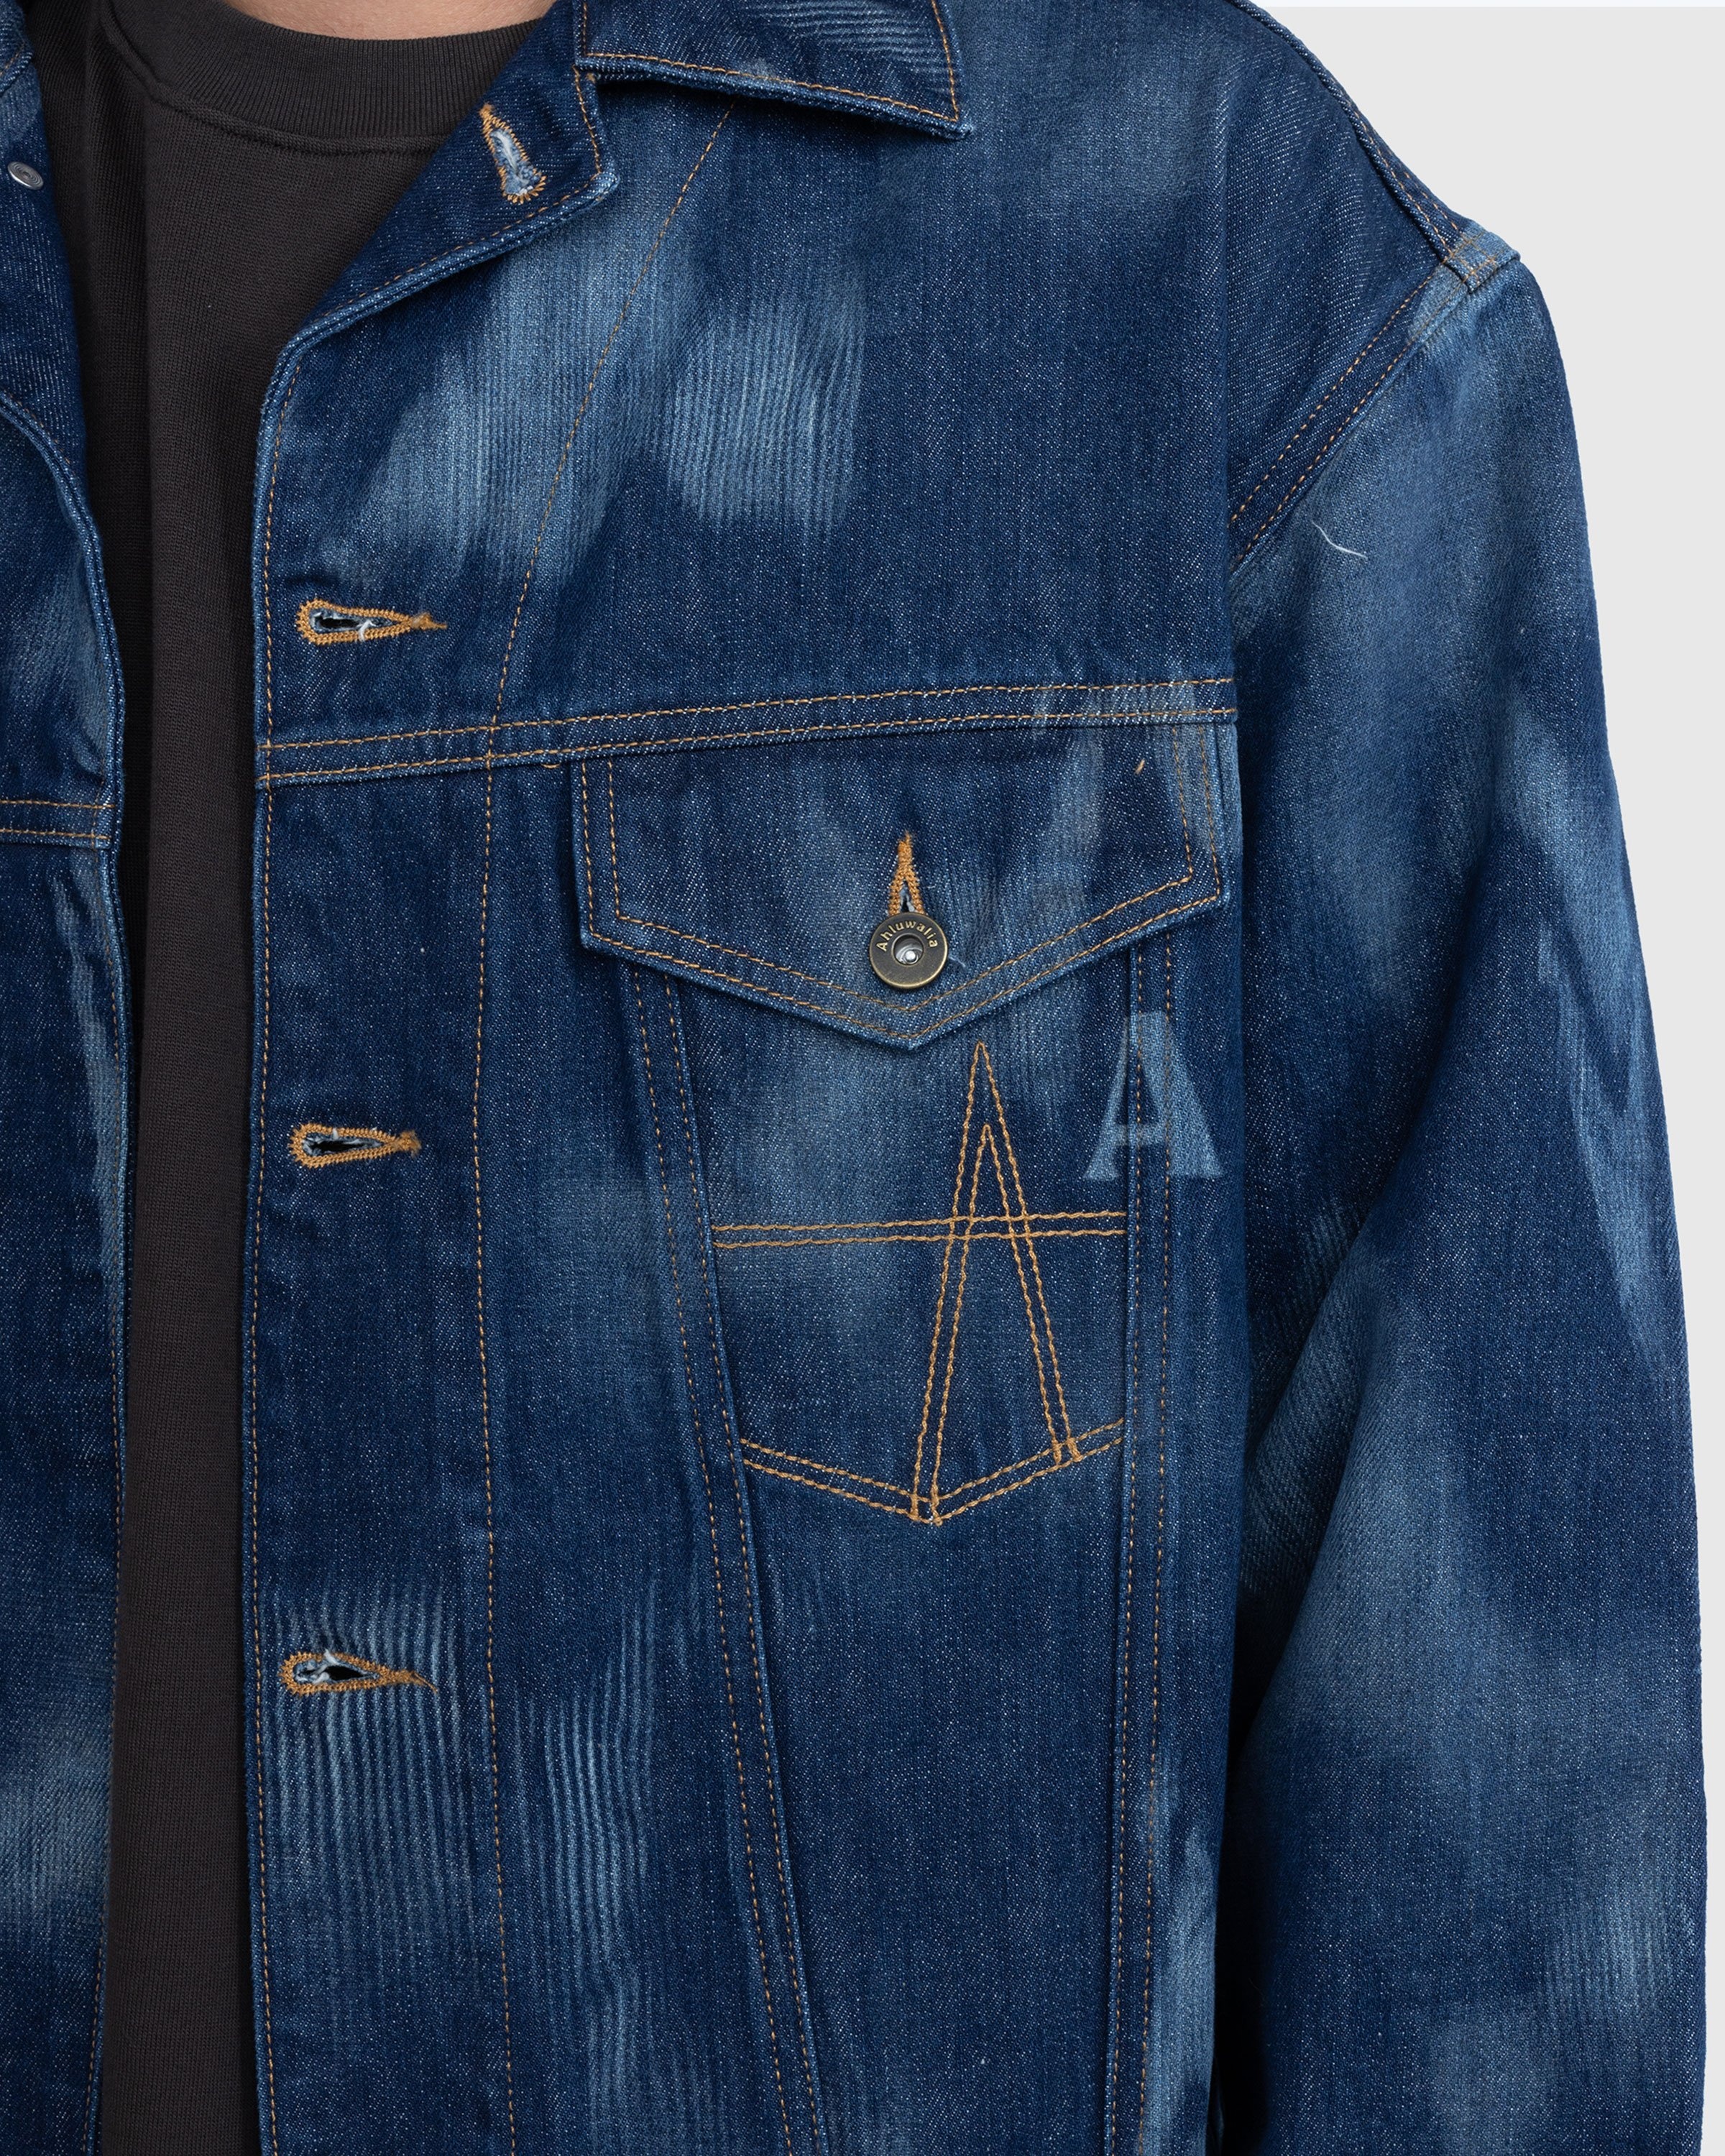 Ahluwalia – Signature Denim Jacket Indigo - Outerwear - Blue - Image 5